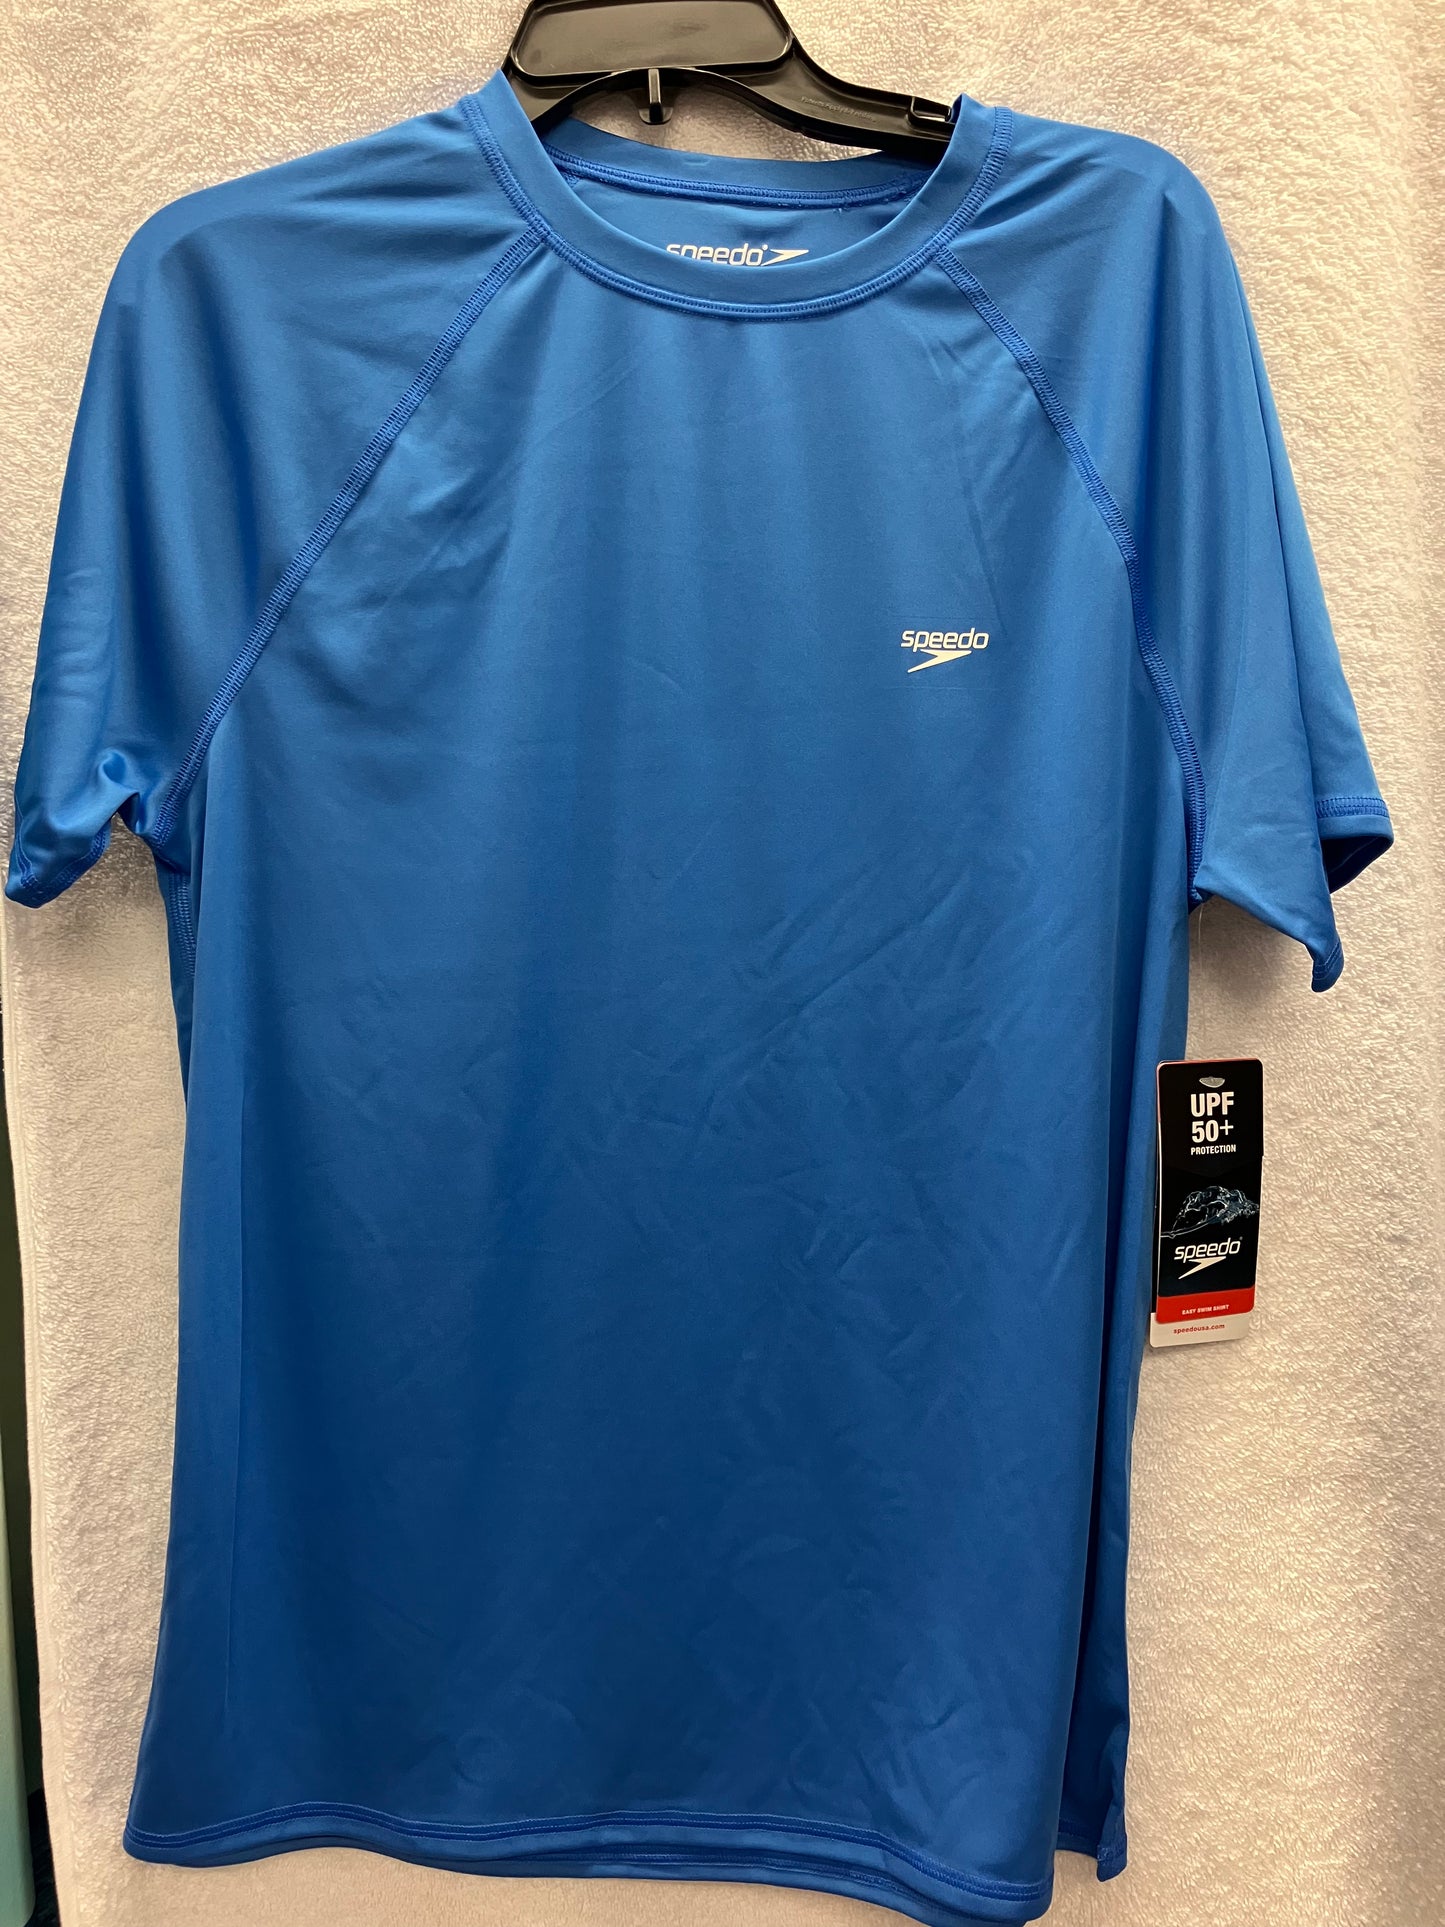 Speedo Palace Blue Easy Swim Shirt Size XLarge